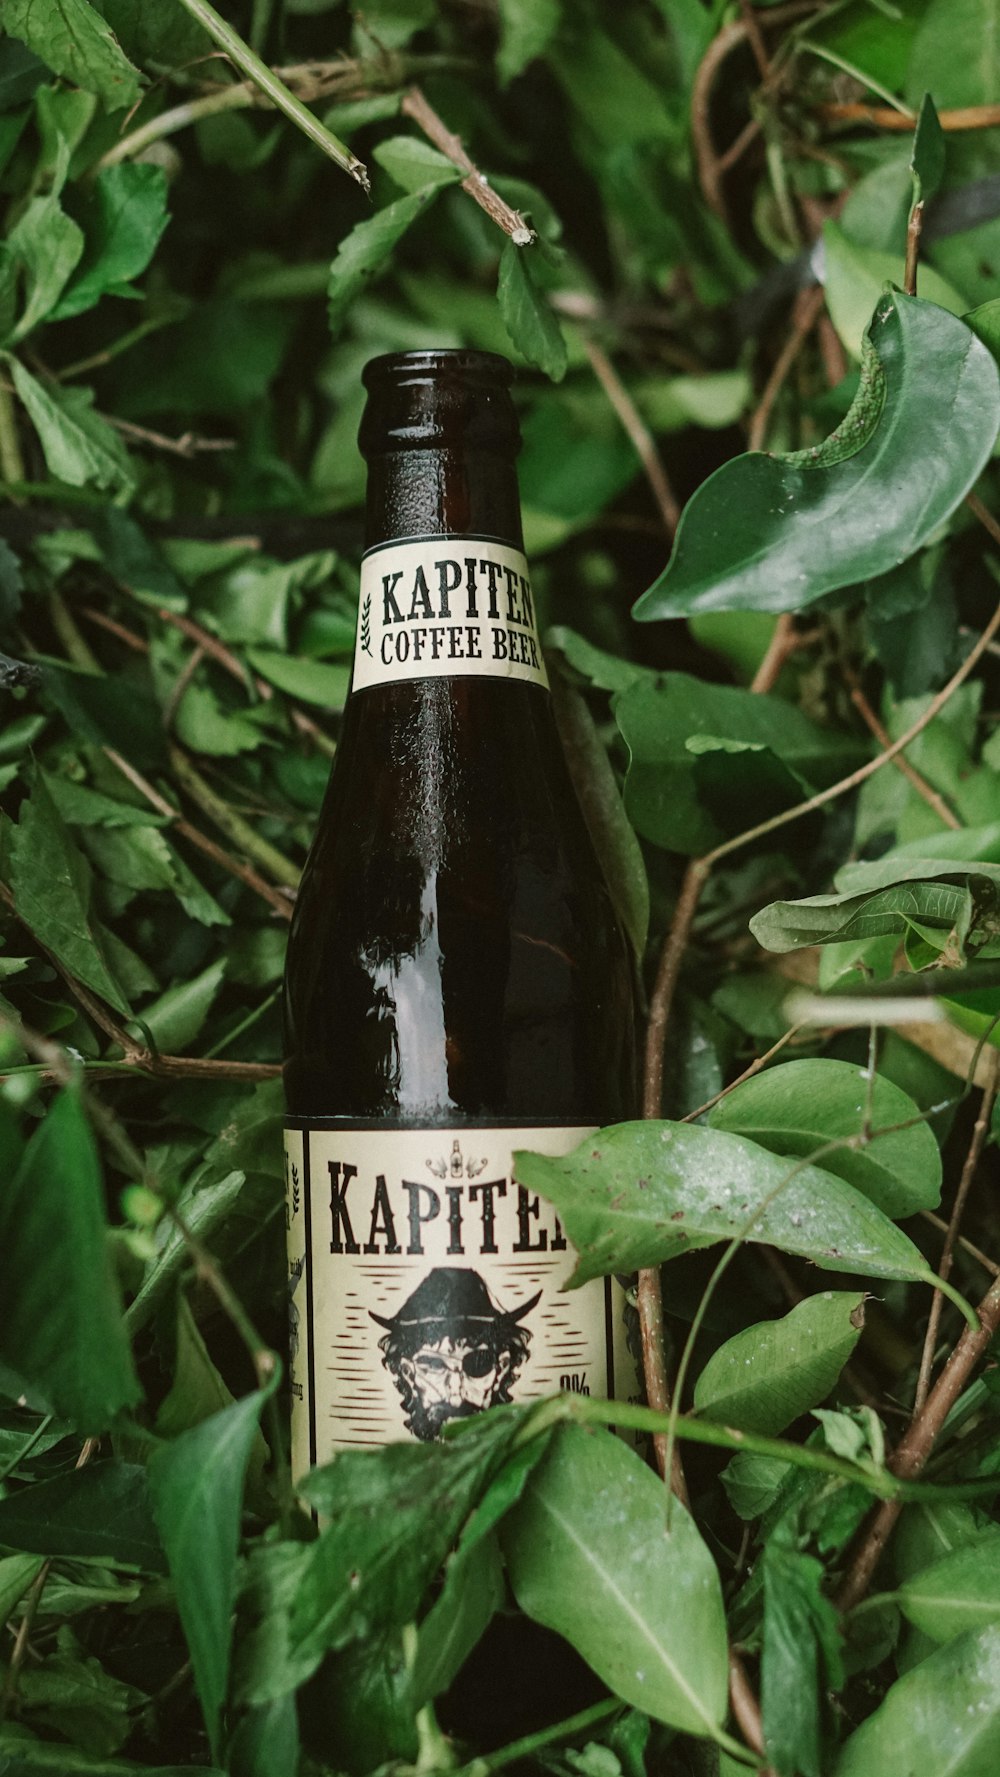 a bottle of kapita coffee sits in a bush